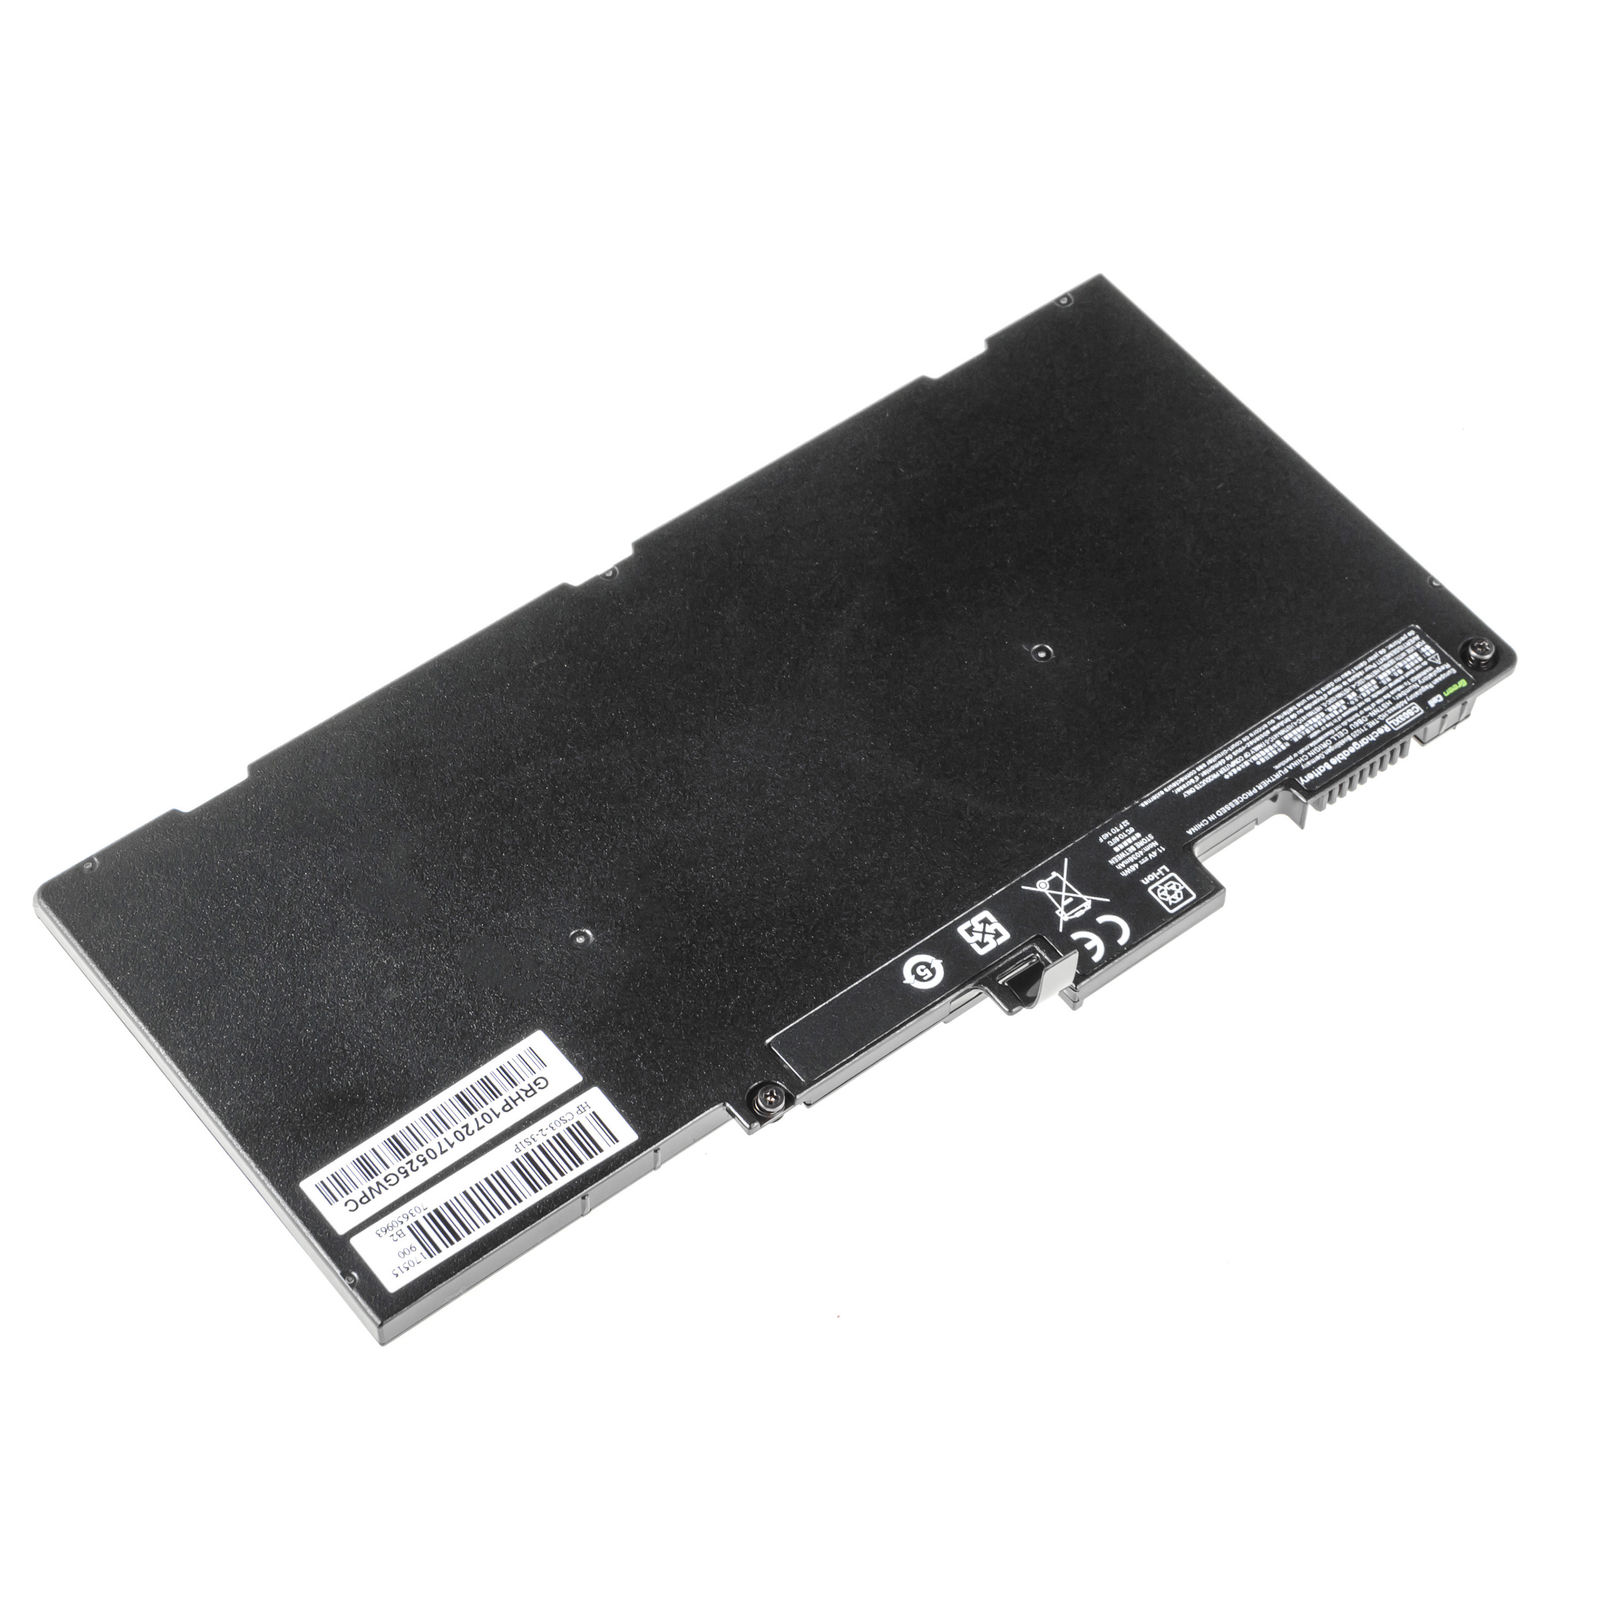 μπαταρία για HP EliteBook 755 G3 745 G3 840 G3 850 G3 συμβιβάσιμος